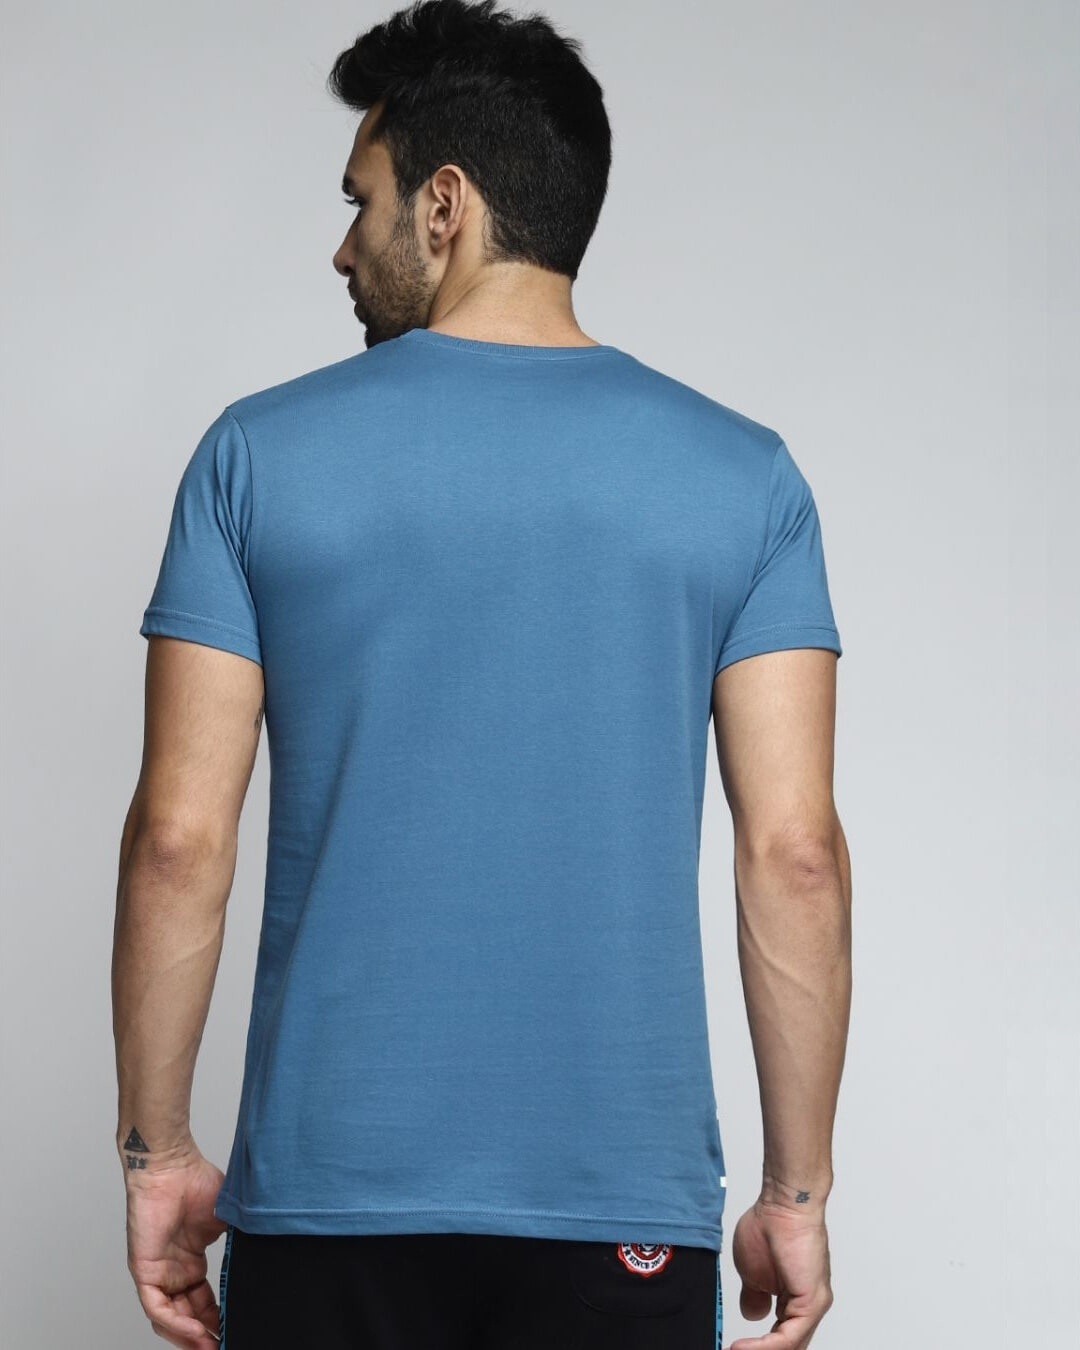 Shop Men's Blue Striped T-shirt